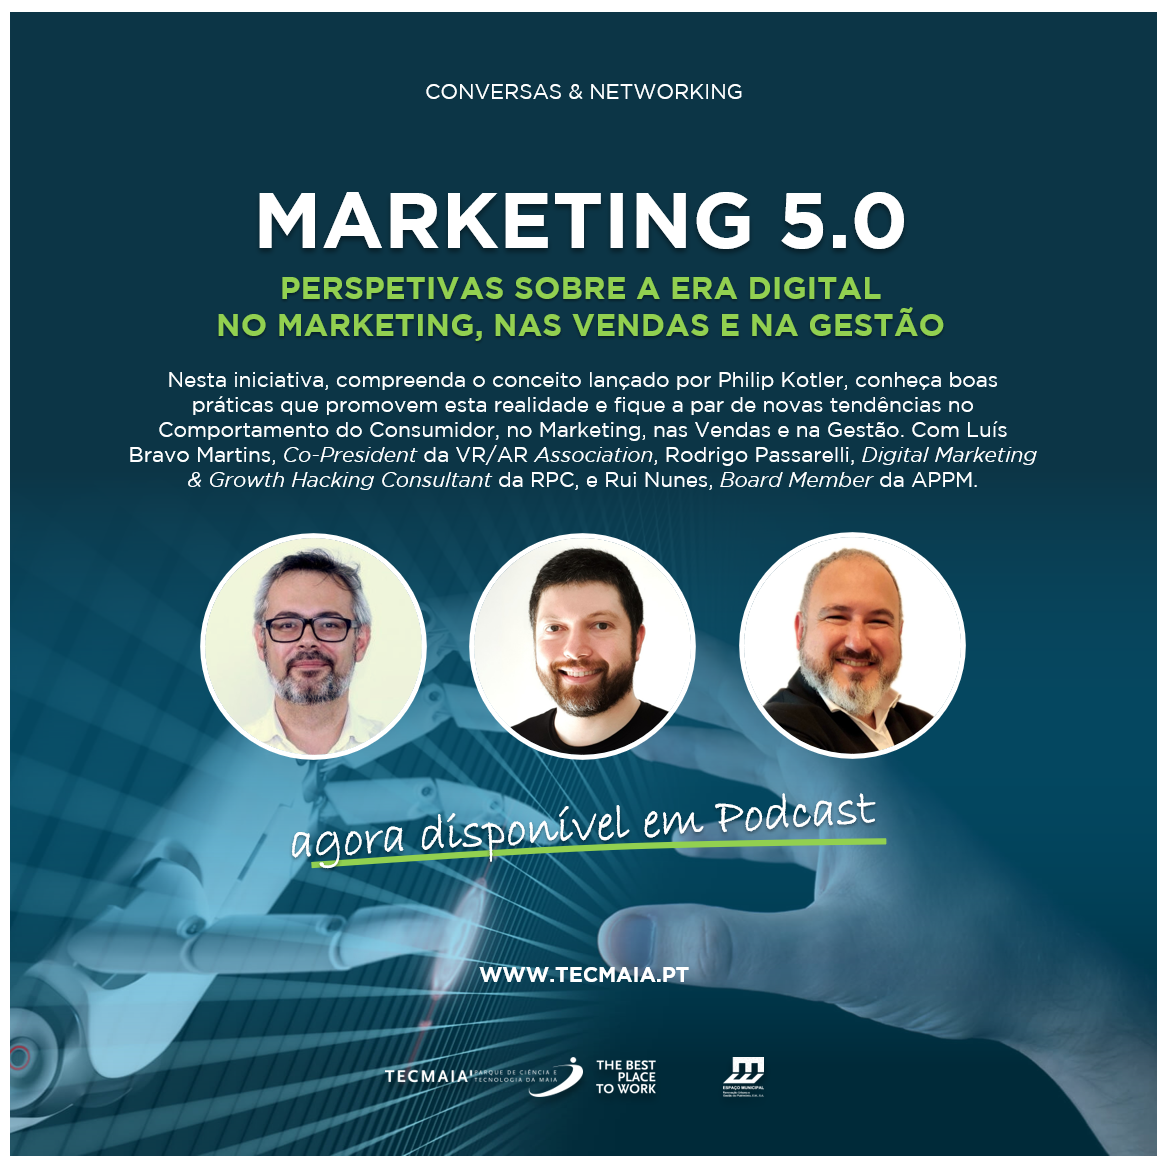 Webtalk "Marketing 5.0"